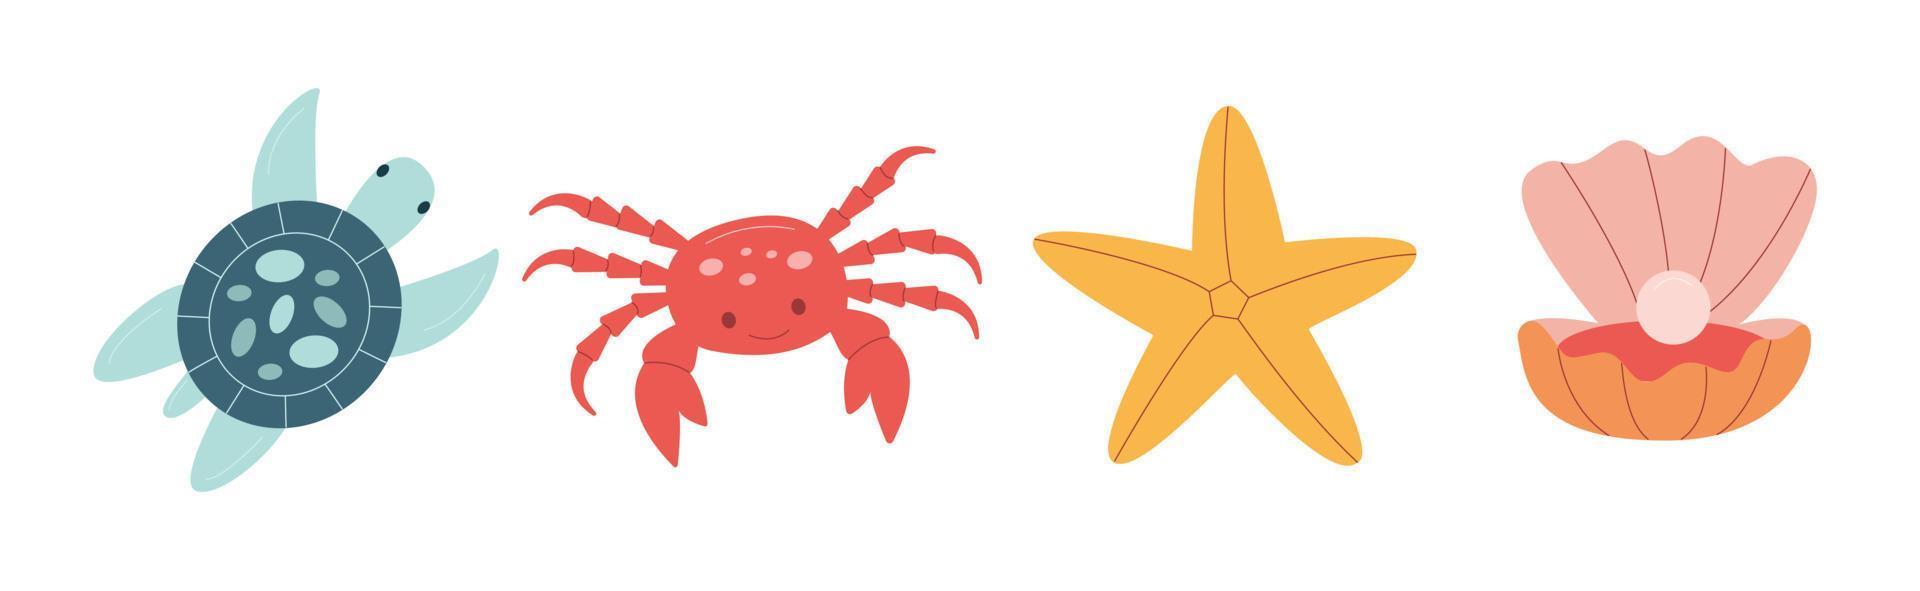 ensemble de mer habitants. étoile de mer, crabe, coraux, tortue et coquilles vecteur illustration. griffonnage carton illustration.